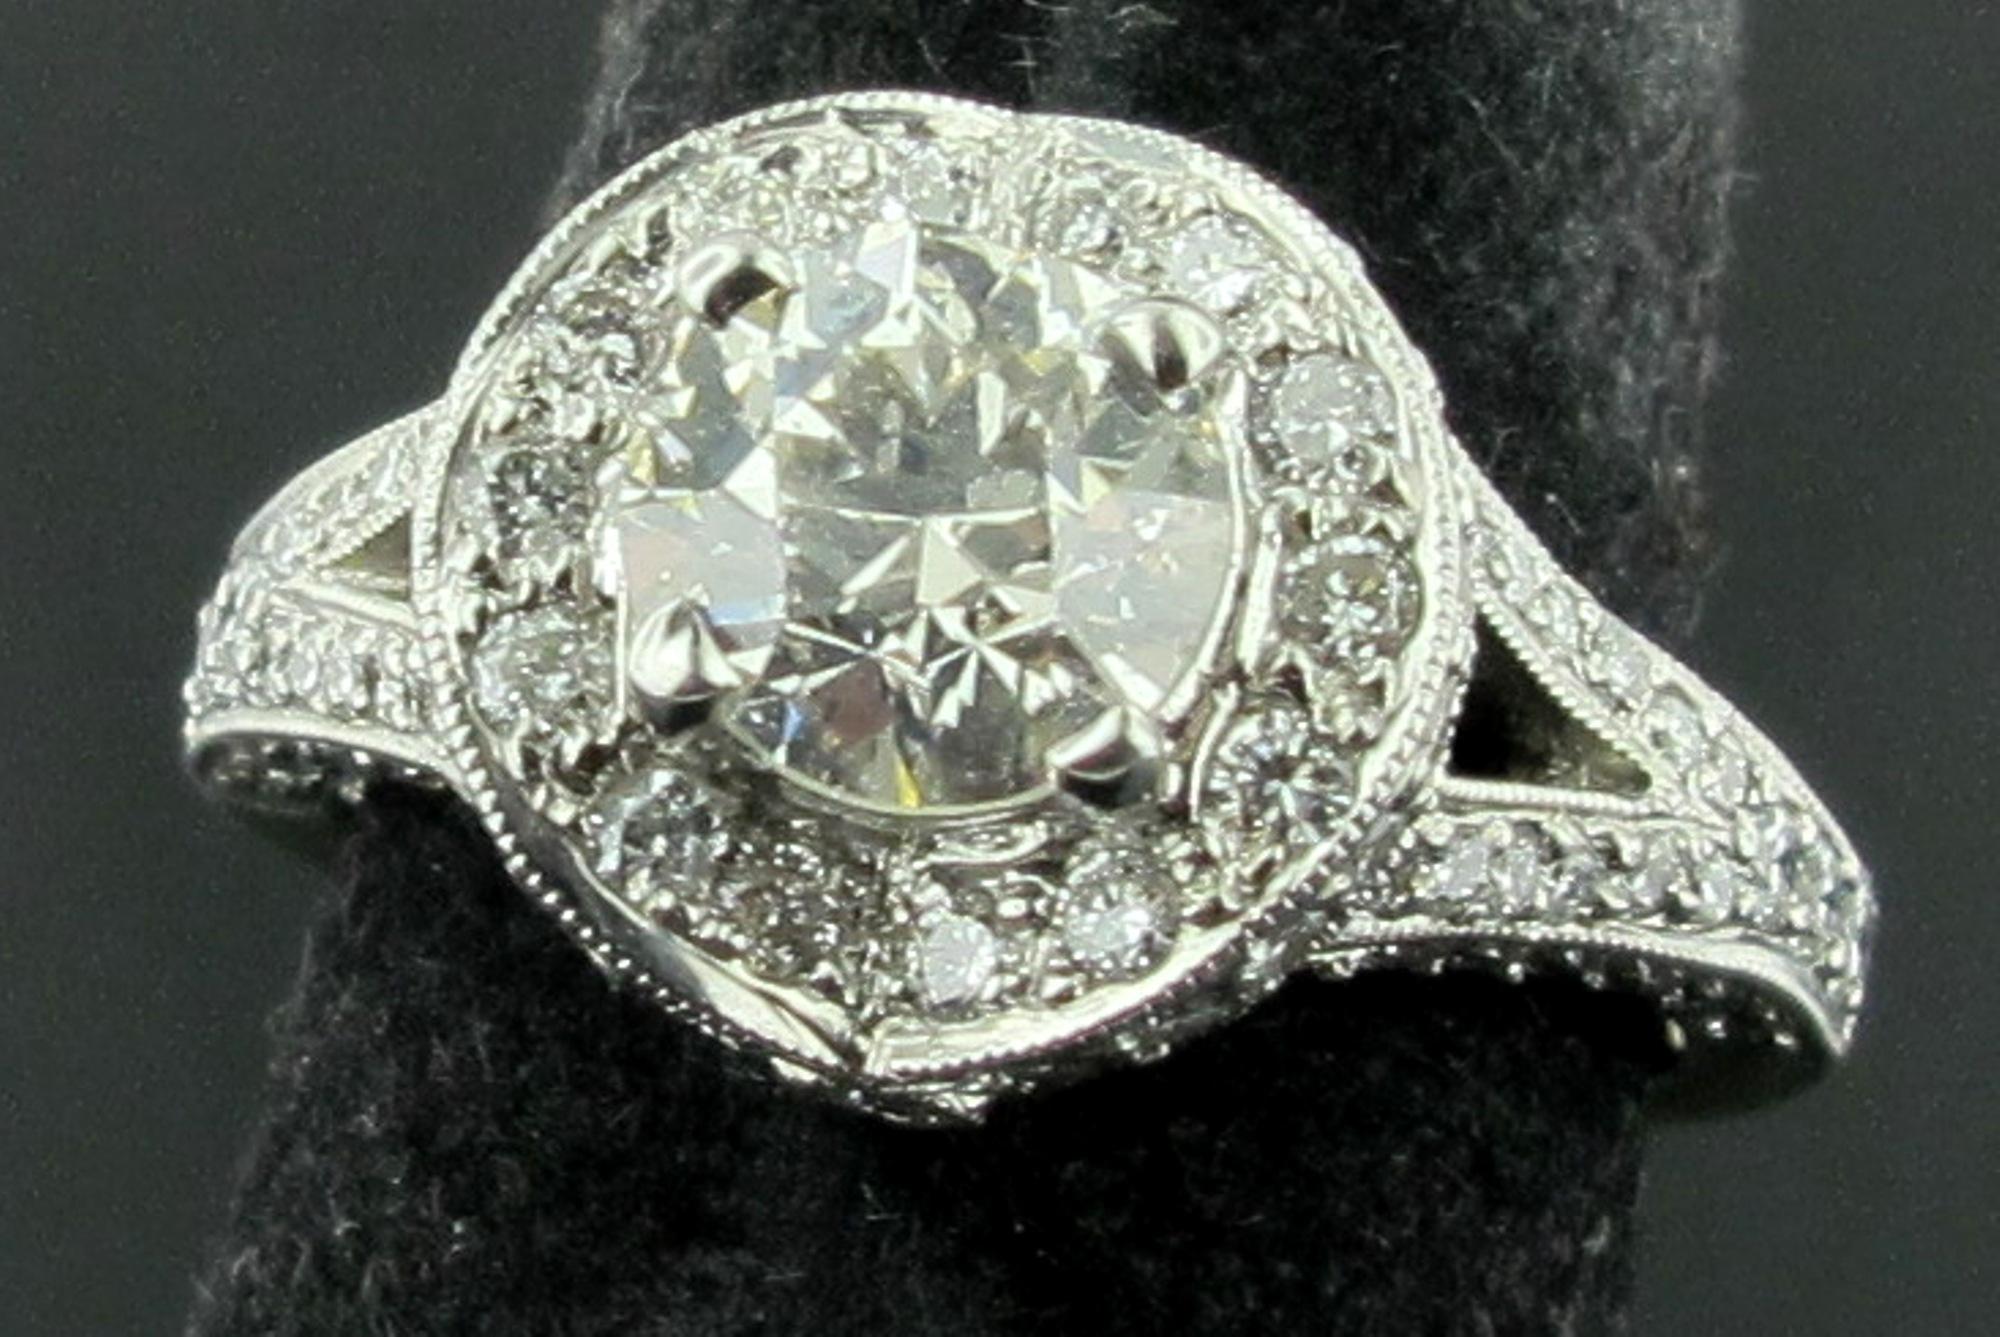 In 18 Karat Weißgold gefasst ist ein 1,14 Karat schwerer Diamant im Old European Cut mit weiteren 0,89 Karat Diamanten in der modernen Fassung.  Das Gesamtgewicht der Diamanten beträgt 2,03 Karat.  Ringgröße ist 6. Der Diamant in der Mitte hat die